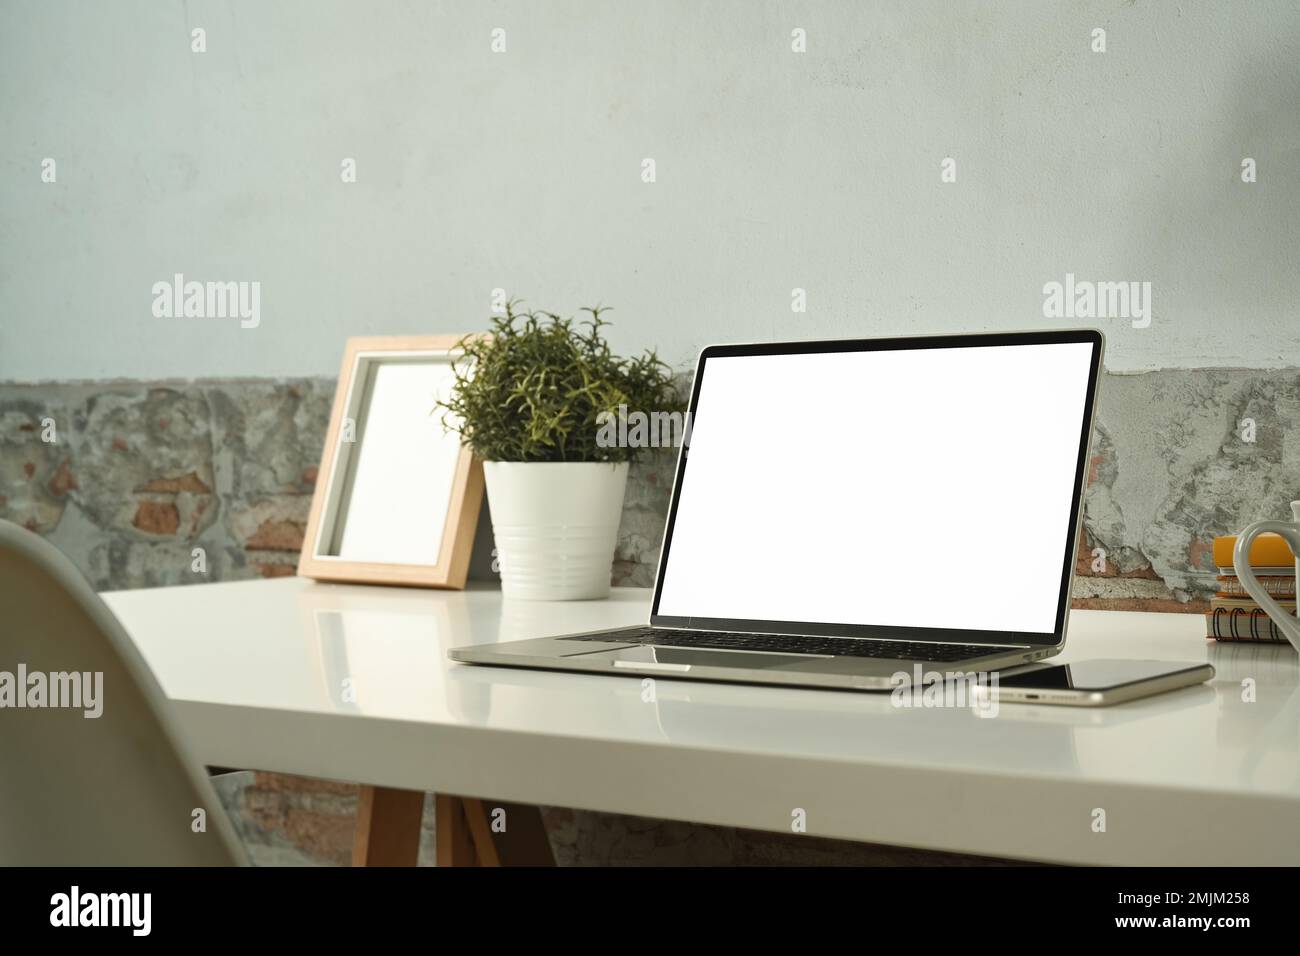 Ambiente di lavoro confortevole con computer portatile, smartphone, cornice per immagini e pianta in vaso in un tavolo bianco Foto Stock